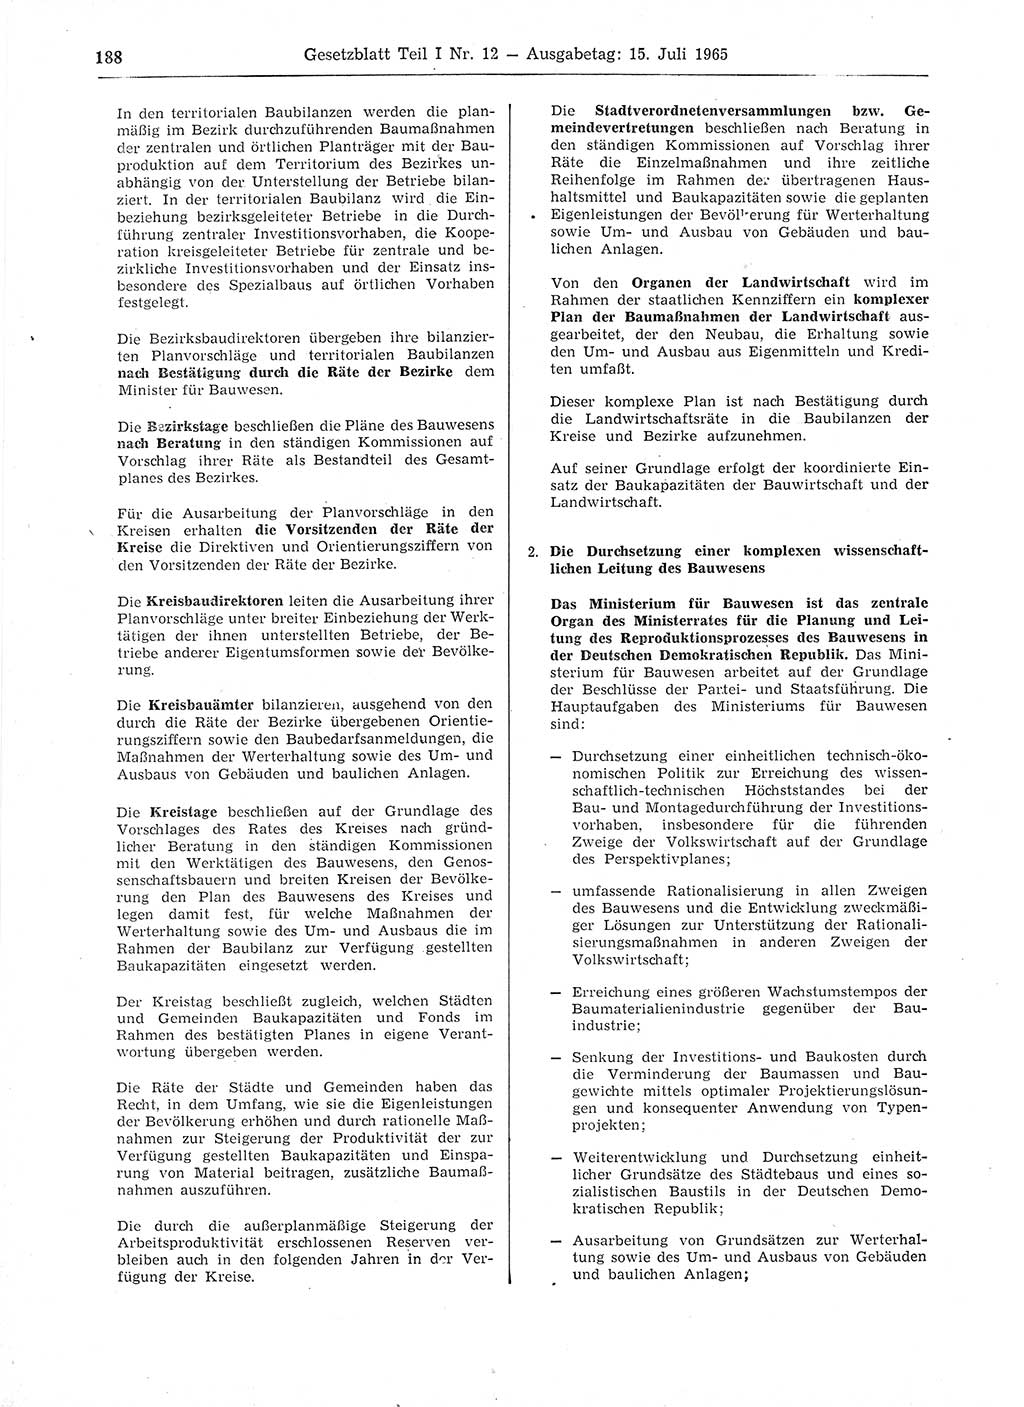 Gesetzblatt (GBl.) der Deutschen Demokratischen Republik (DDR) Teil Ⅰ 1965, Seite 188 (GBl. DDR Ⅰ 1965, S. 188)